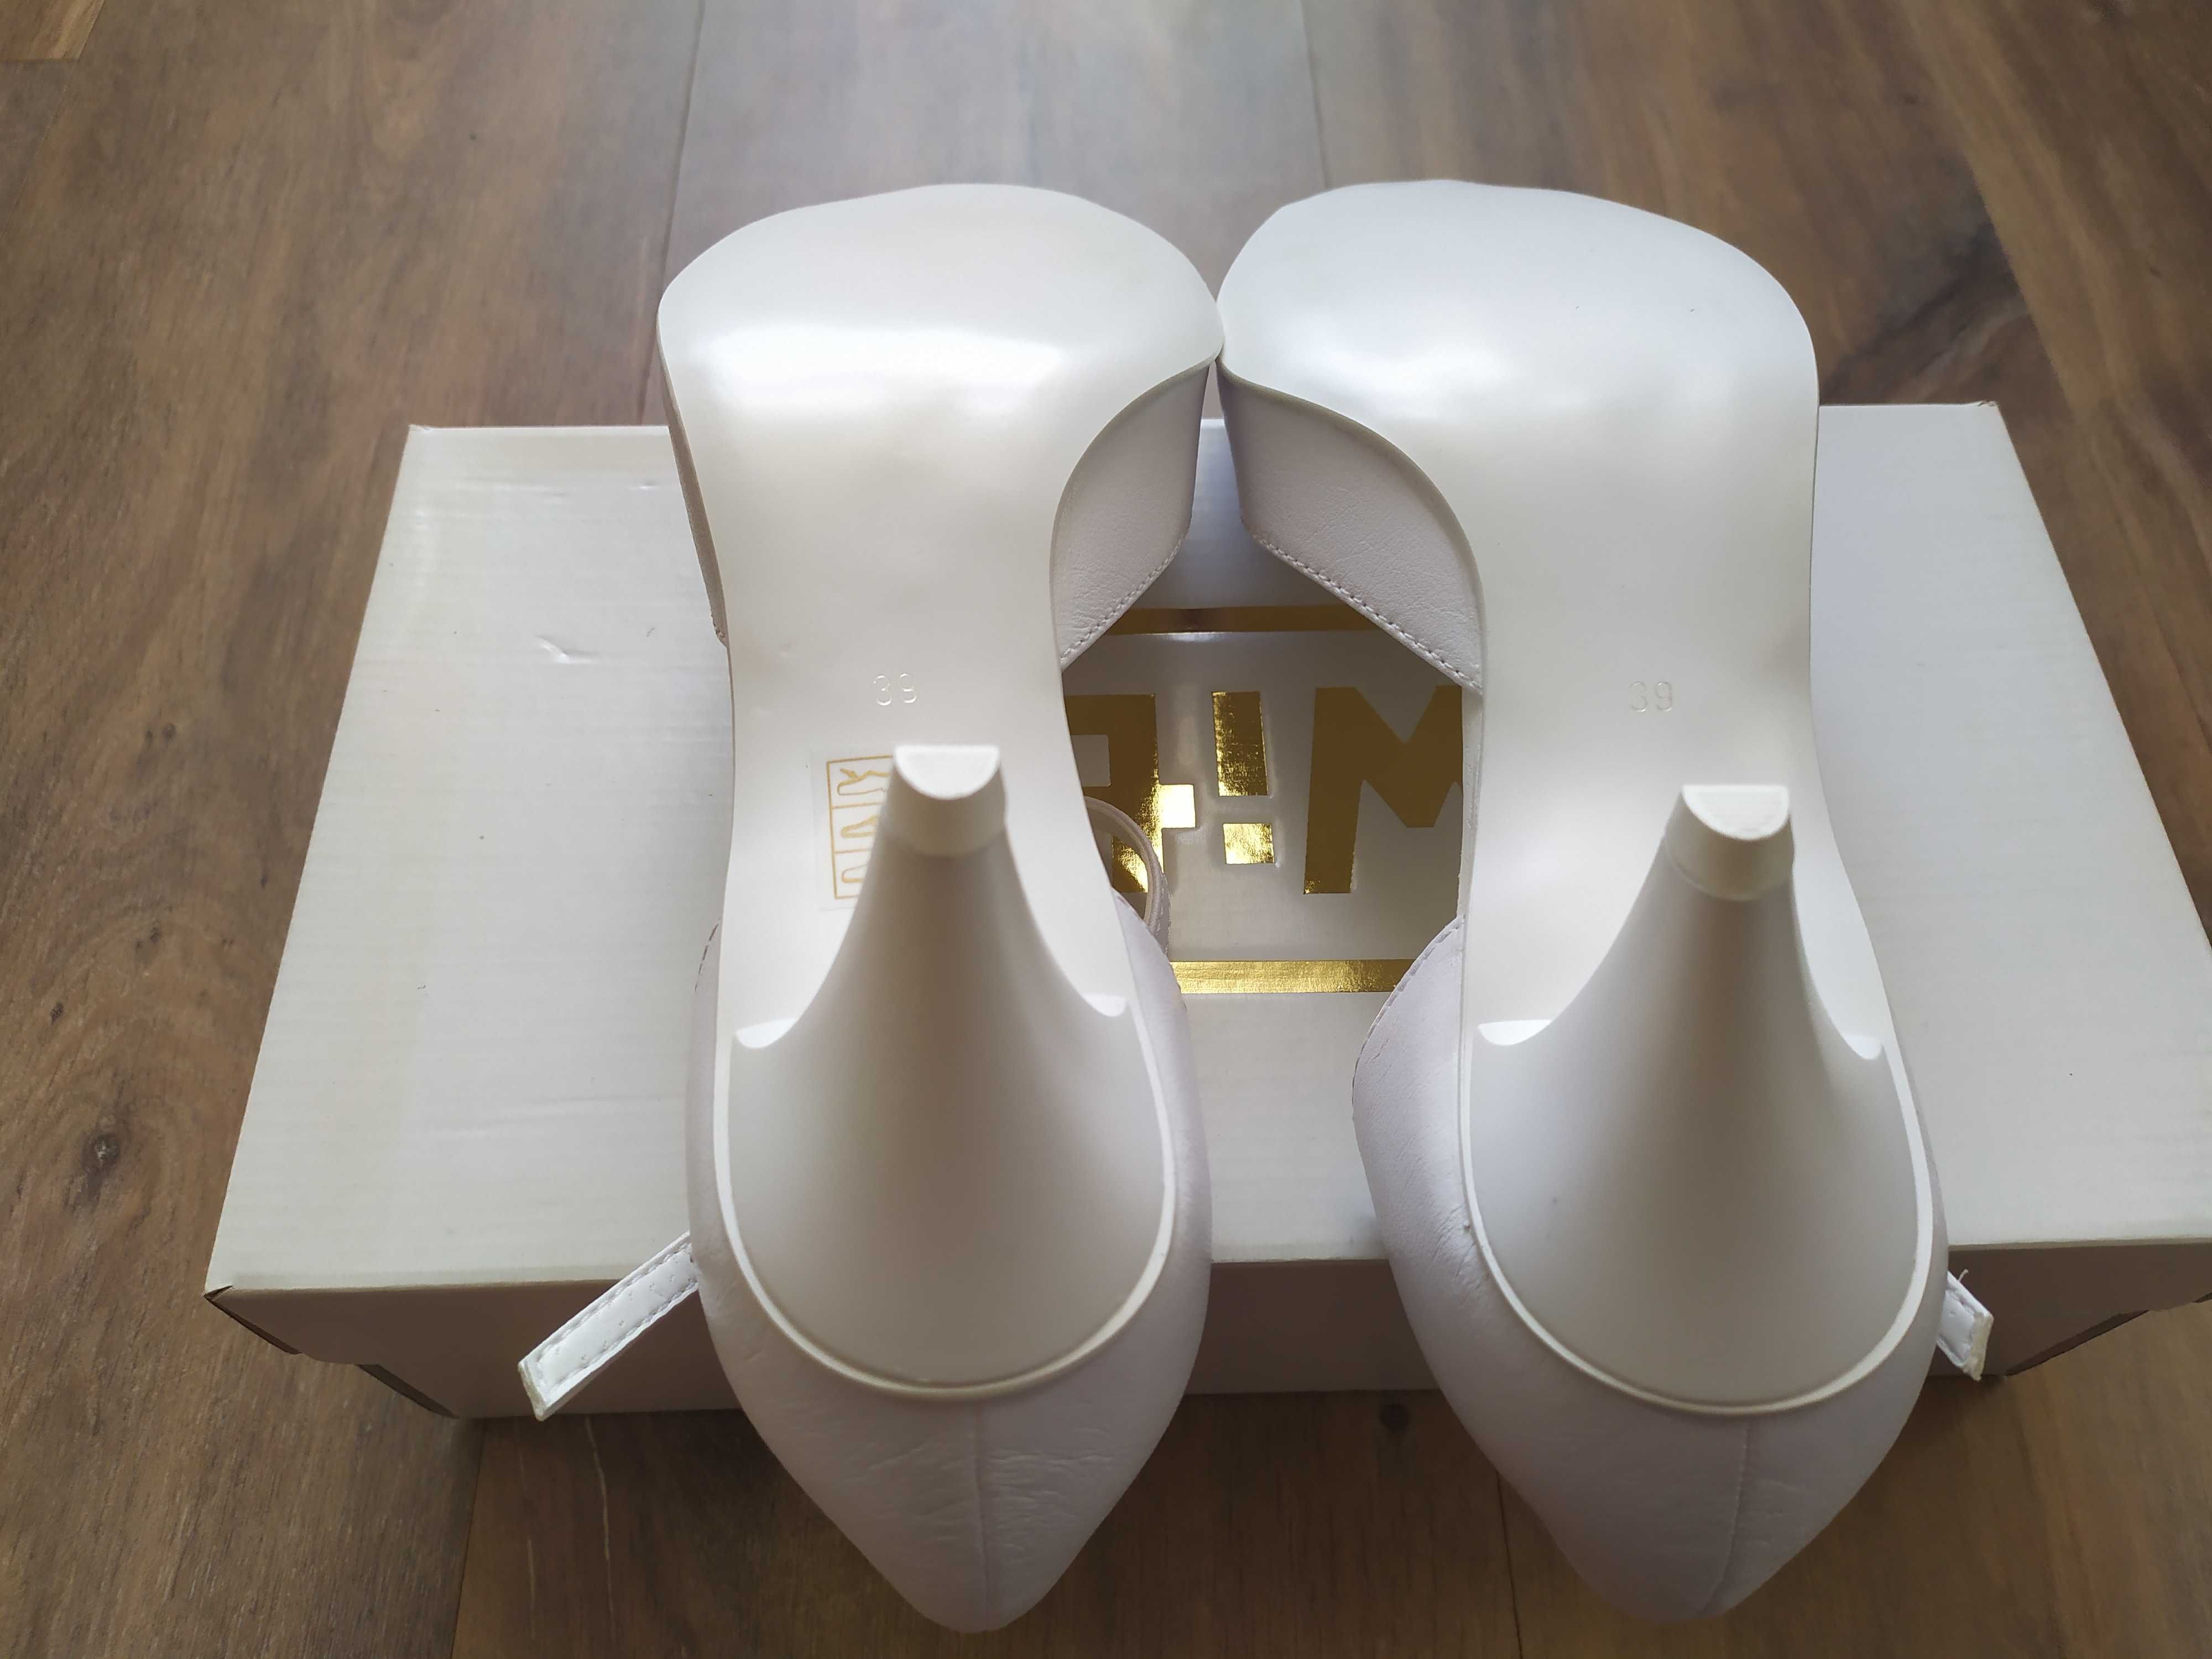 białe buty ślubne WITT nieuzywane rozm 39 model 382 5cm obcas